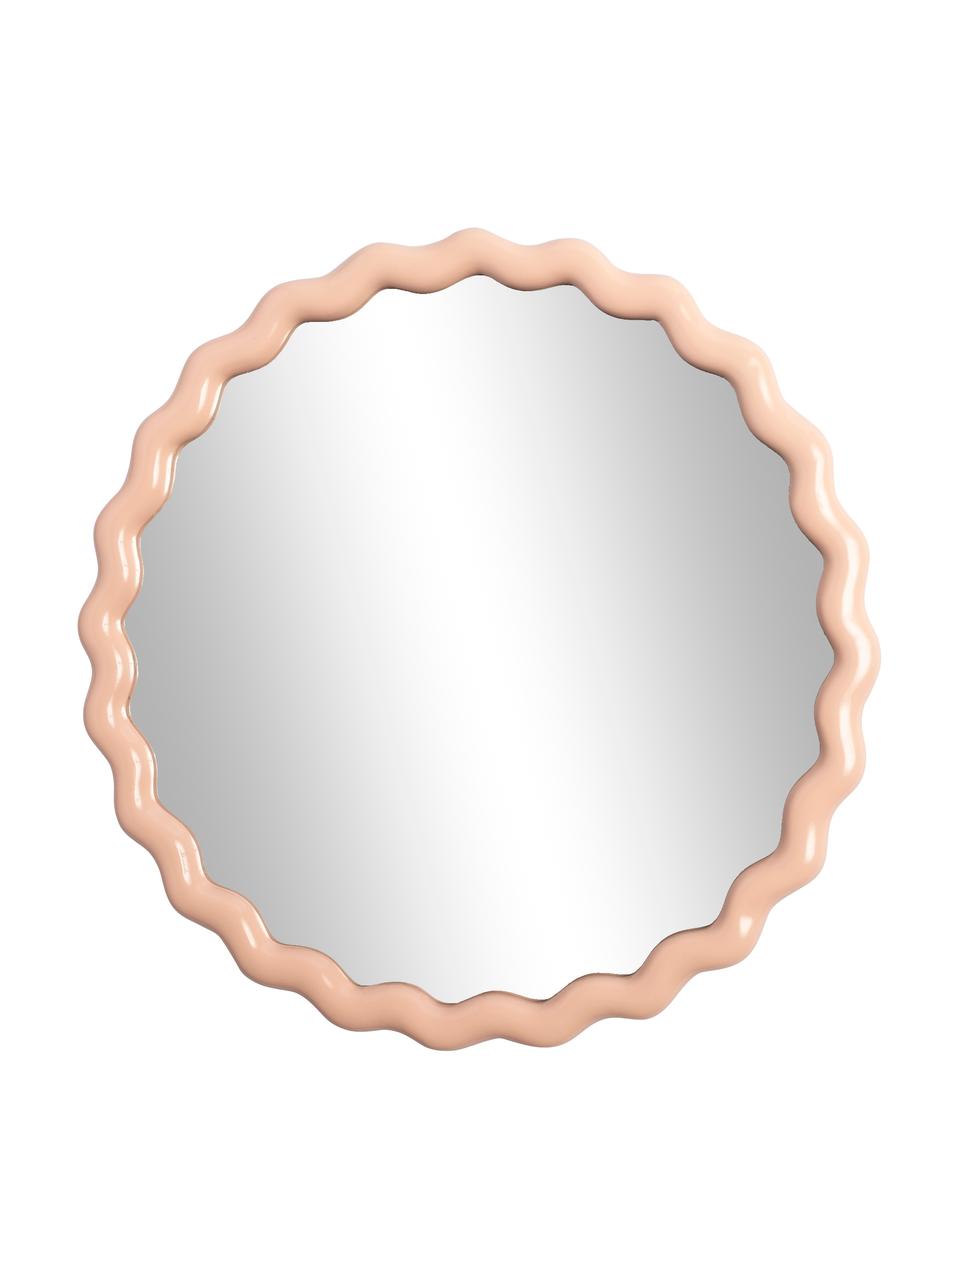 Runder Wandspiegel Zigzag in Beige, Rahmen: Polyresin, Spiegelfläche: Spiegelglas, Pastell-Beige, Ø 50 cm